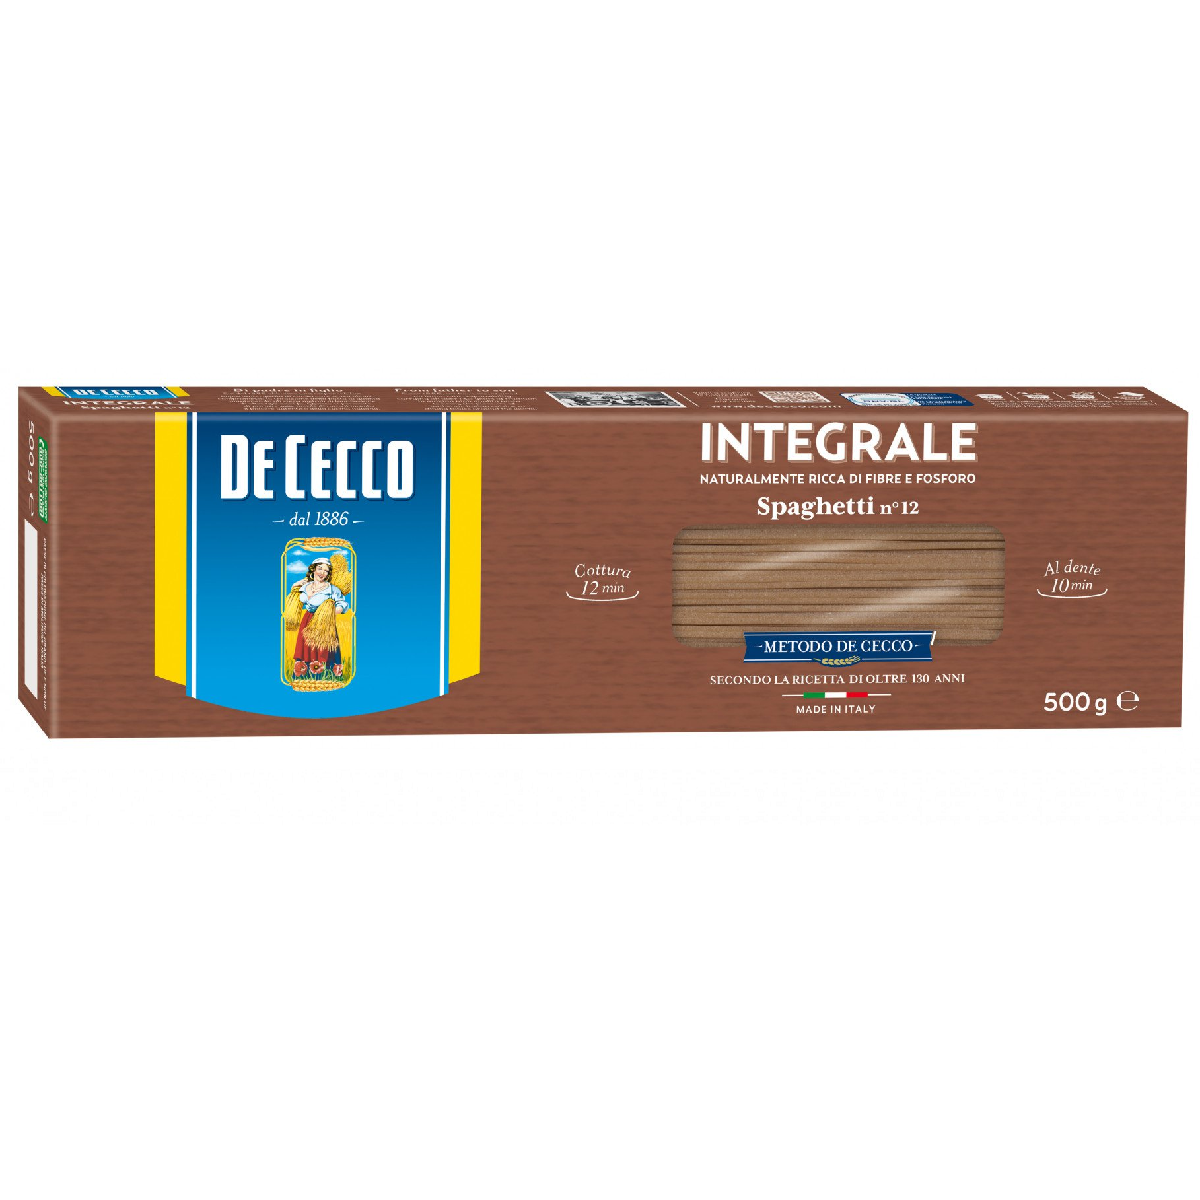 De Cecco Spaghetti Integrale No 12 500g